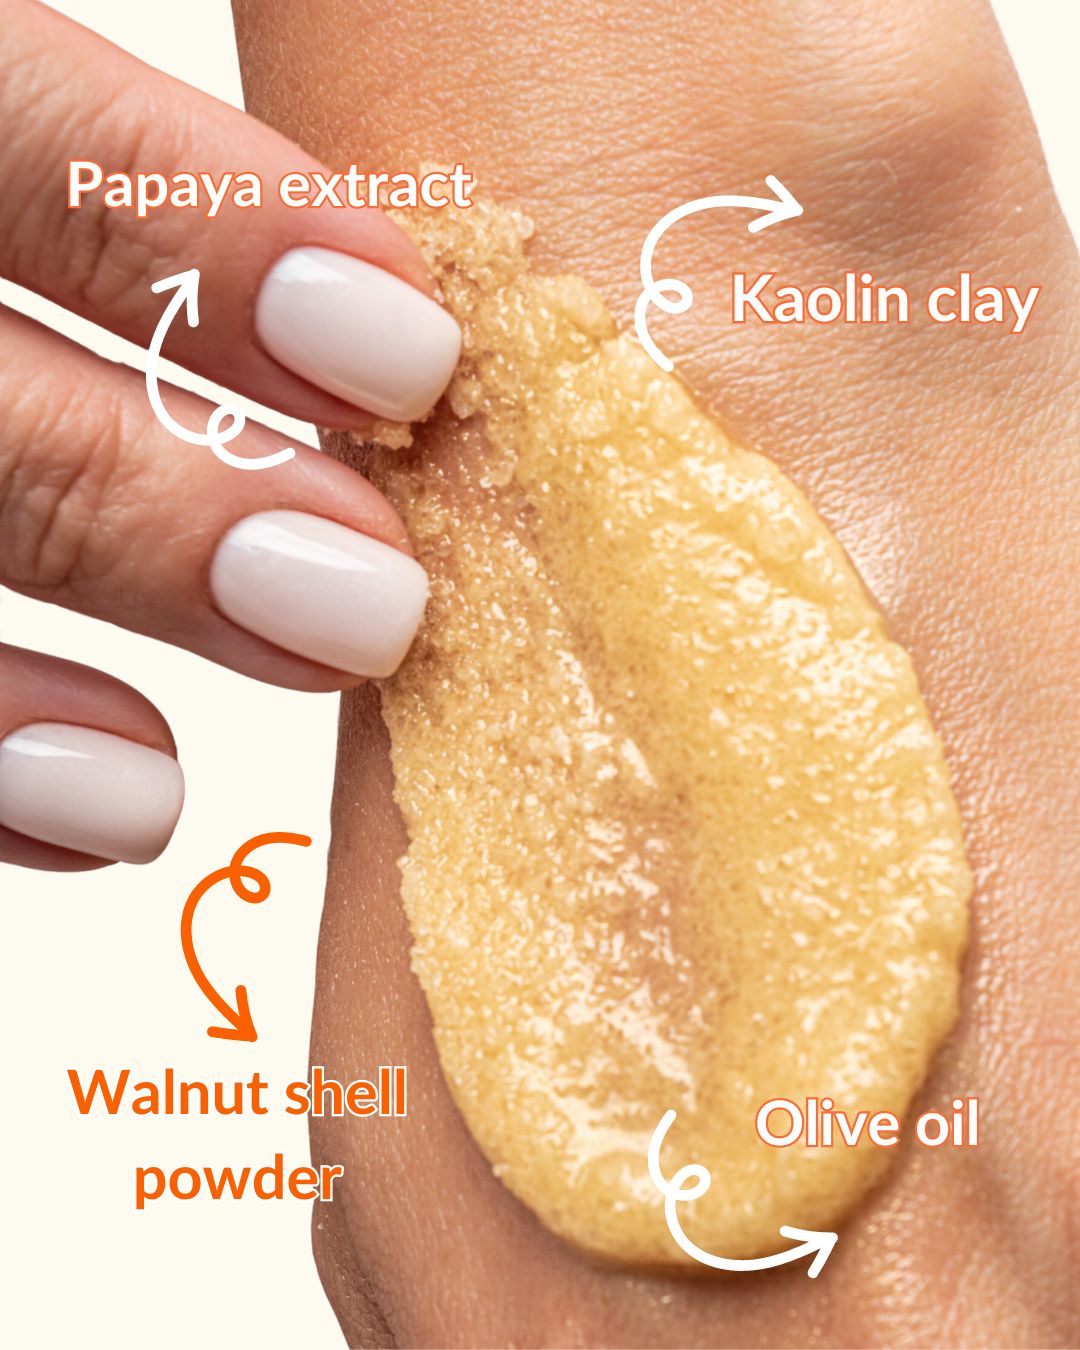 Infographics showing papaya scrub ingredients